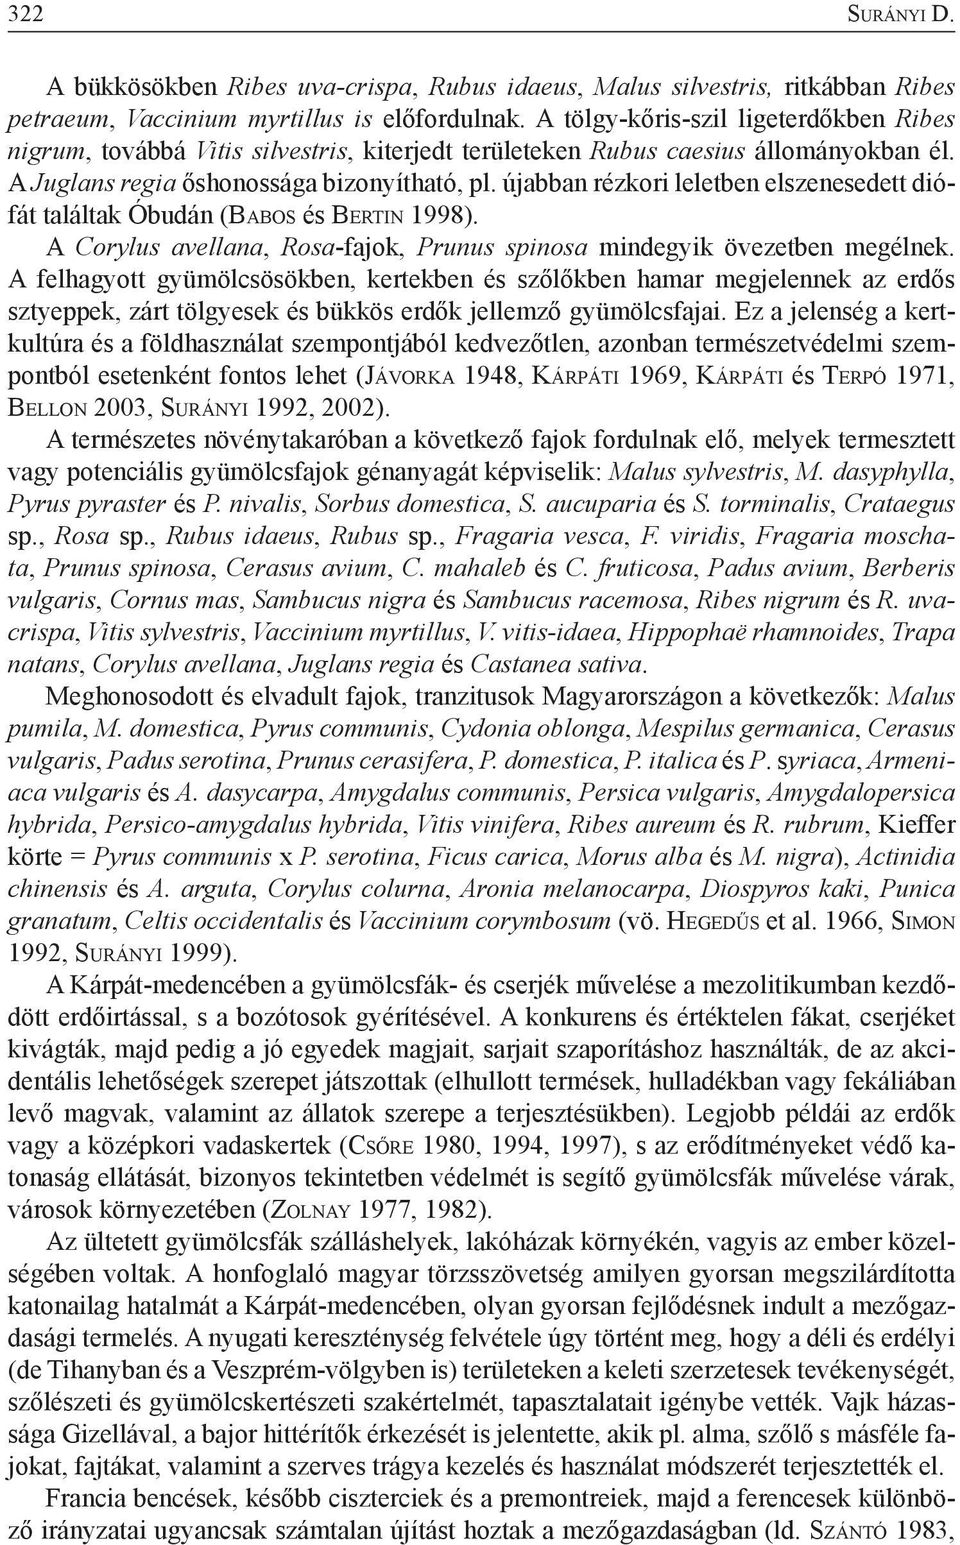 újabban rézkori leletben elszenesedett diófát találtak Óbudán (Ba b o s és Be rt i n 1998). A Corylus avellana, Rosa-fajok, Prunus spinosa mindegyik övezetben megélnek.